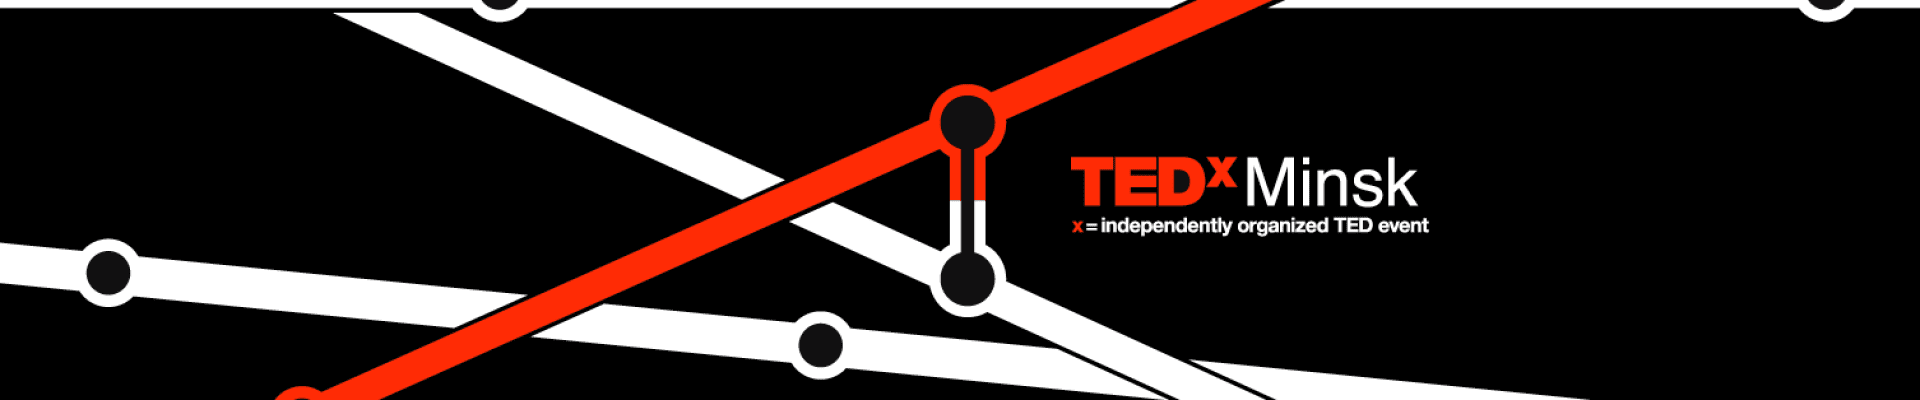 5 TEDx-идей для бизнеса